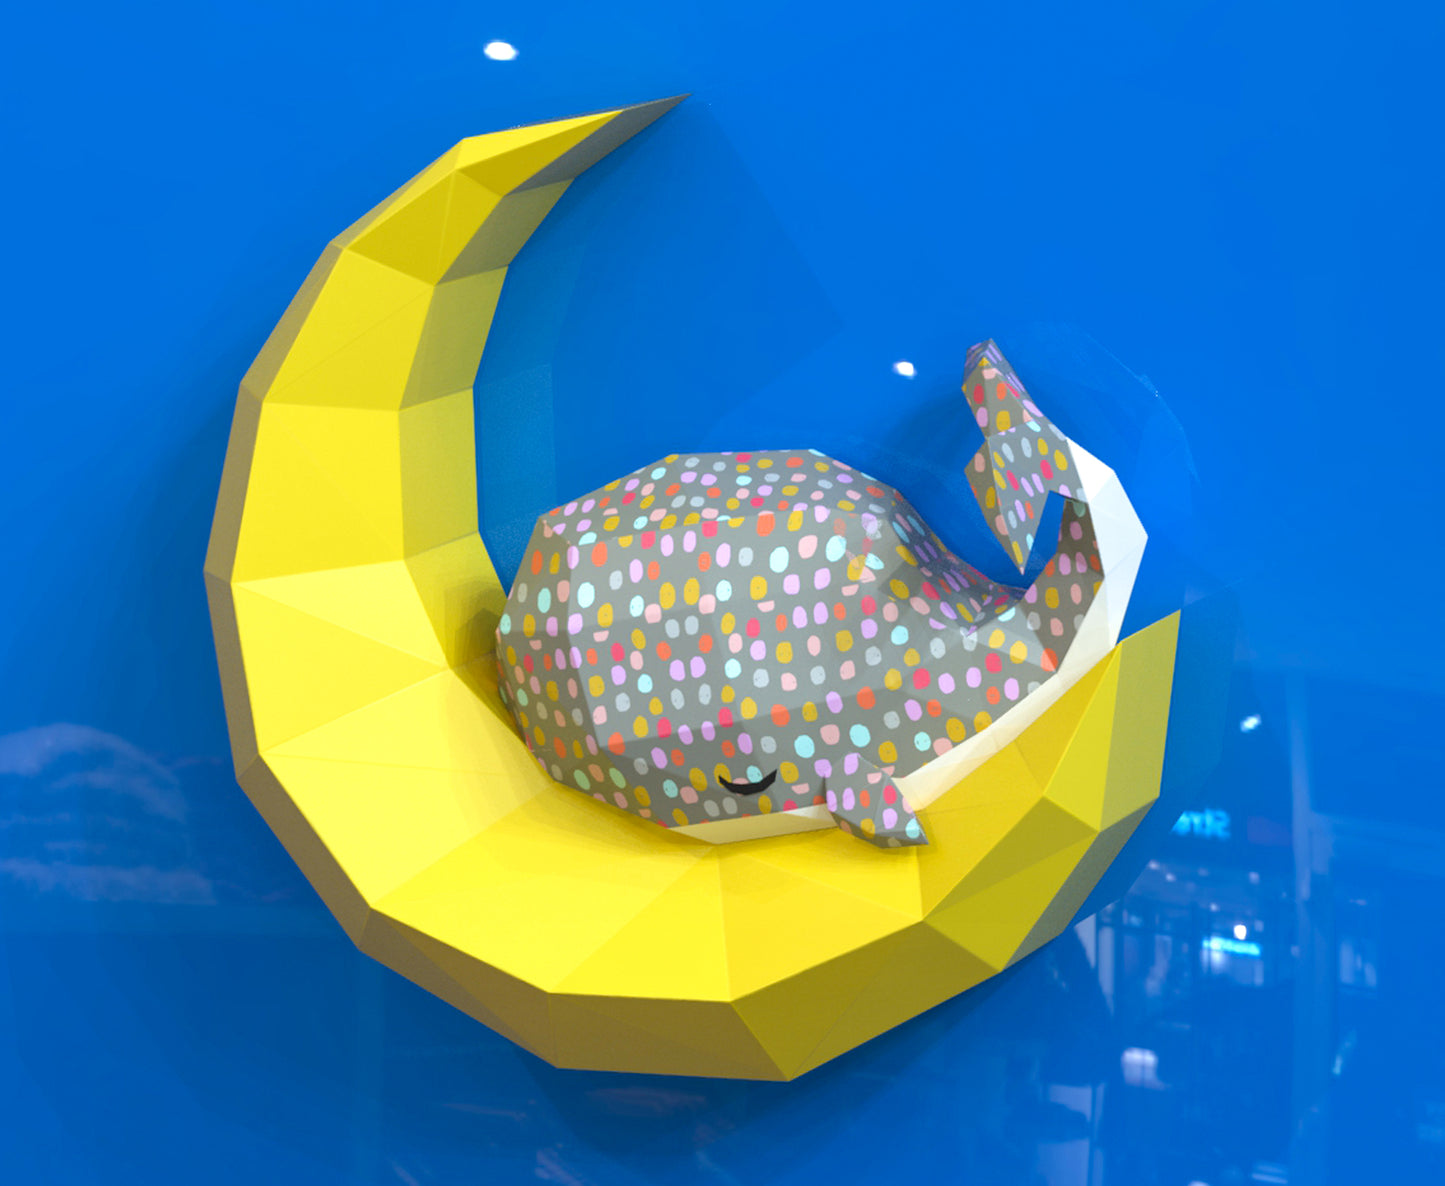 Whale sleeping on moon